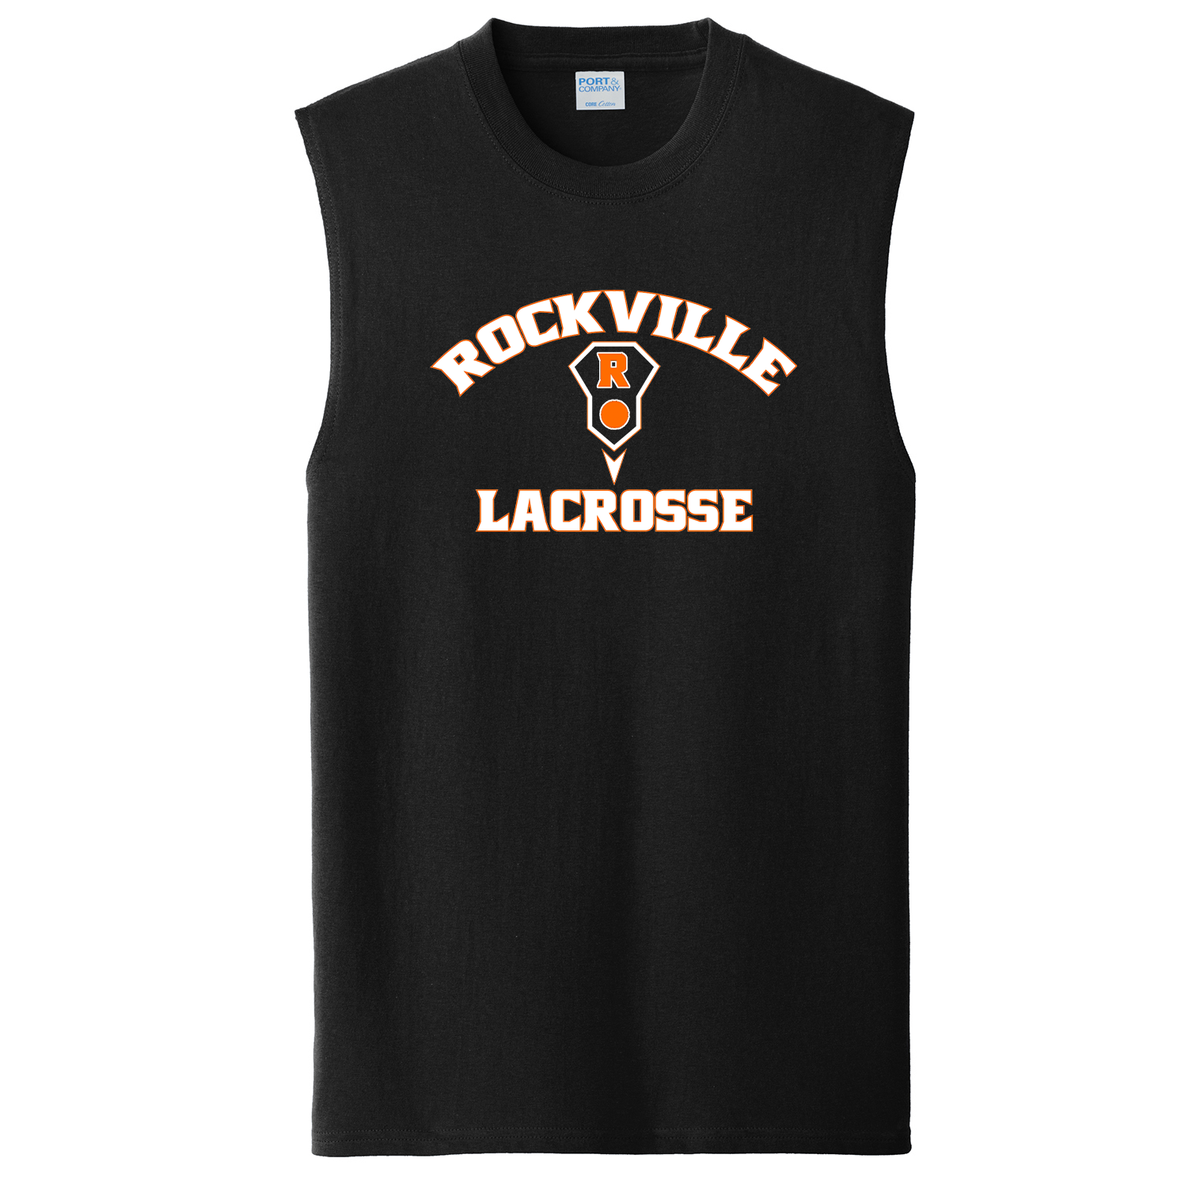 Rockville HS Girls Lacrosse Sleeveless T-Shirt